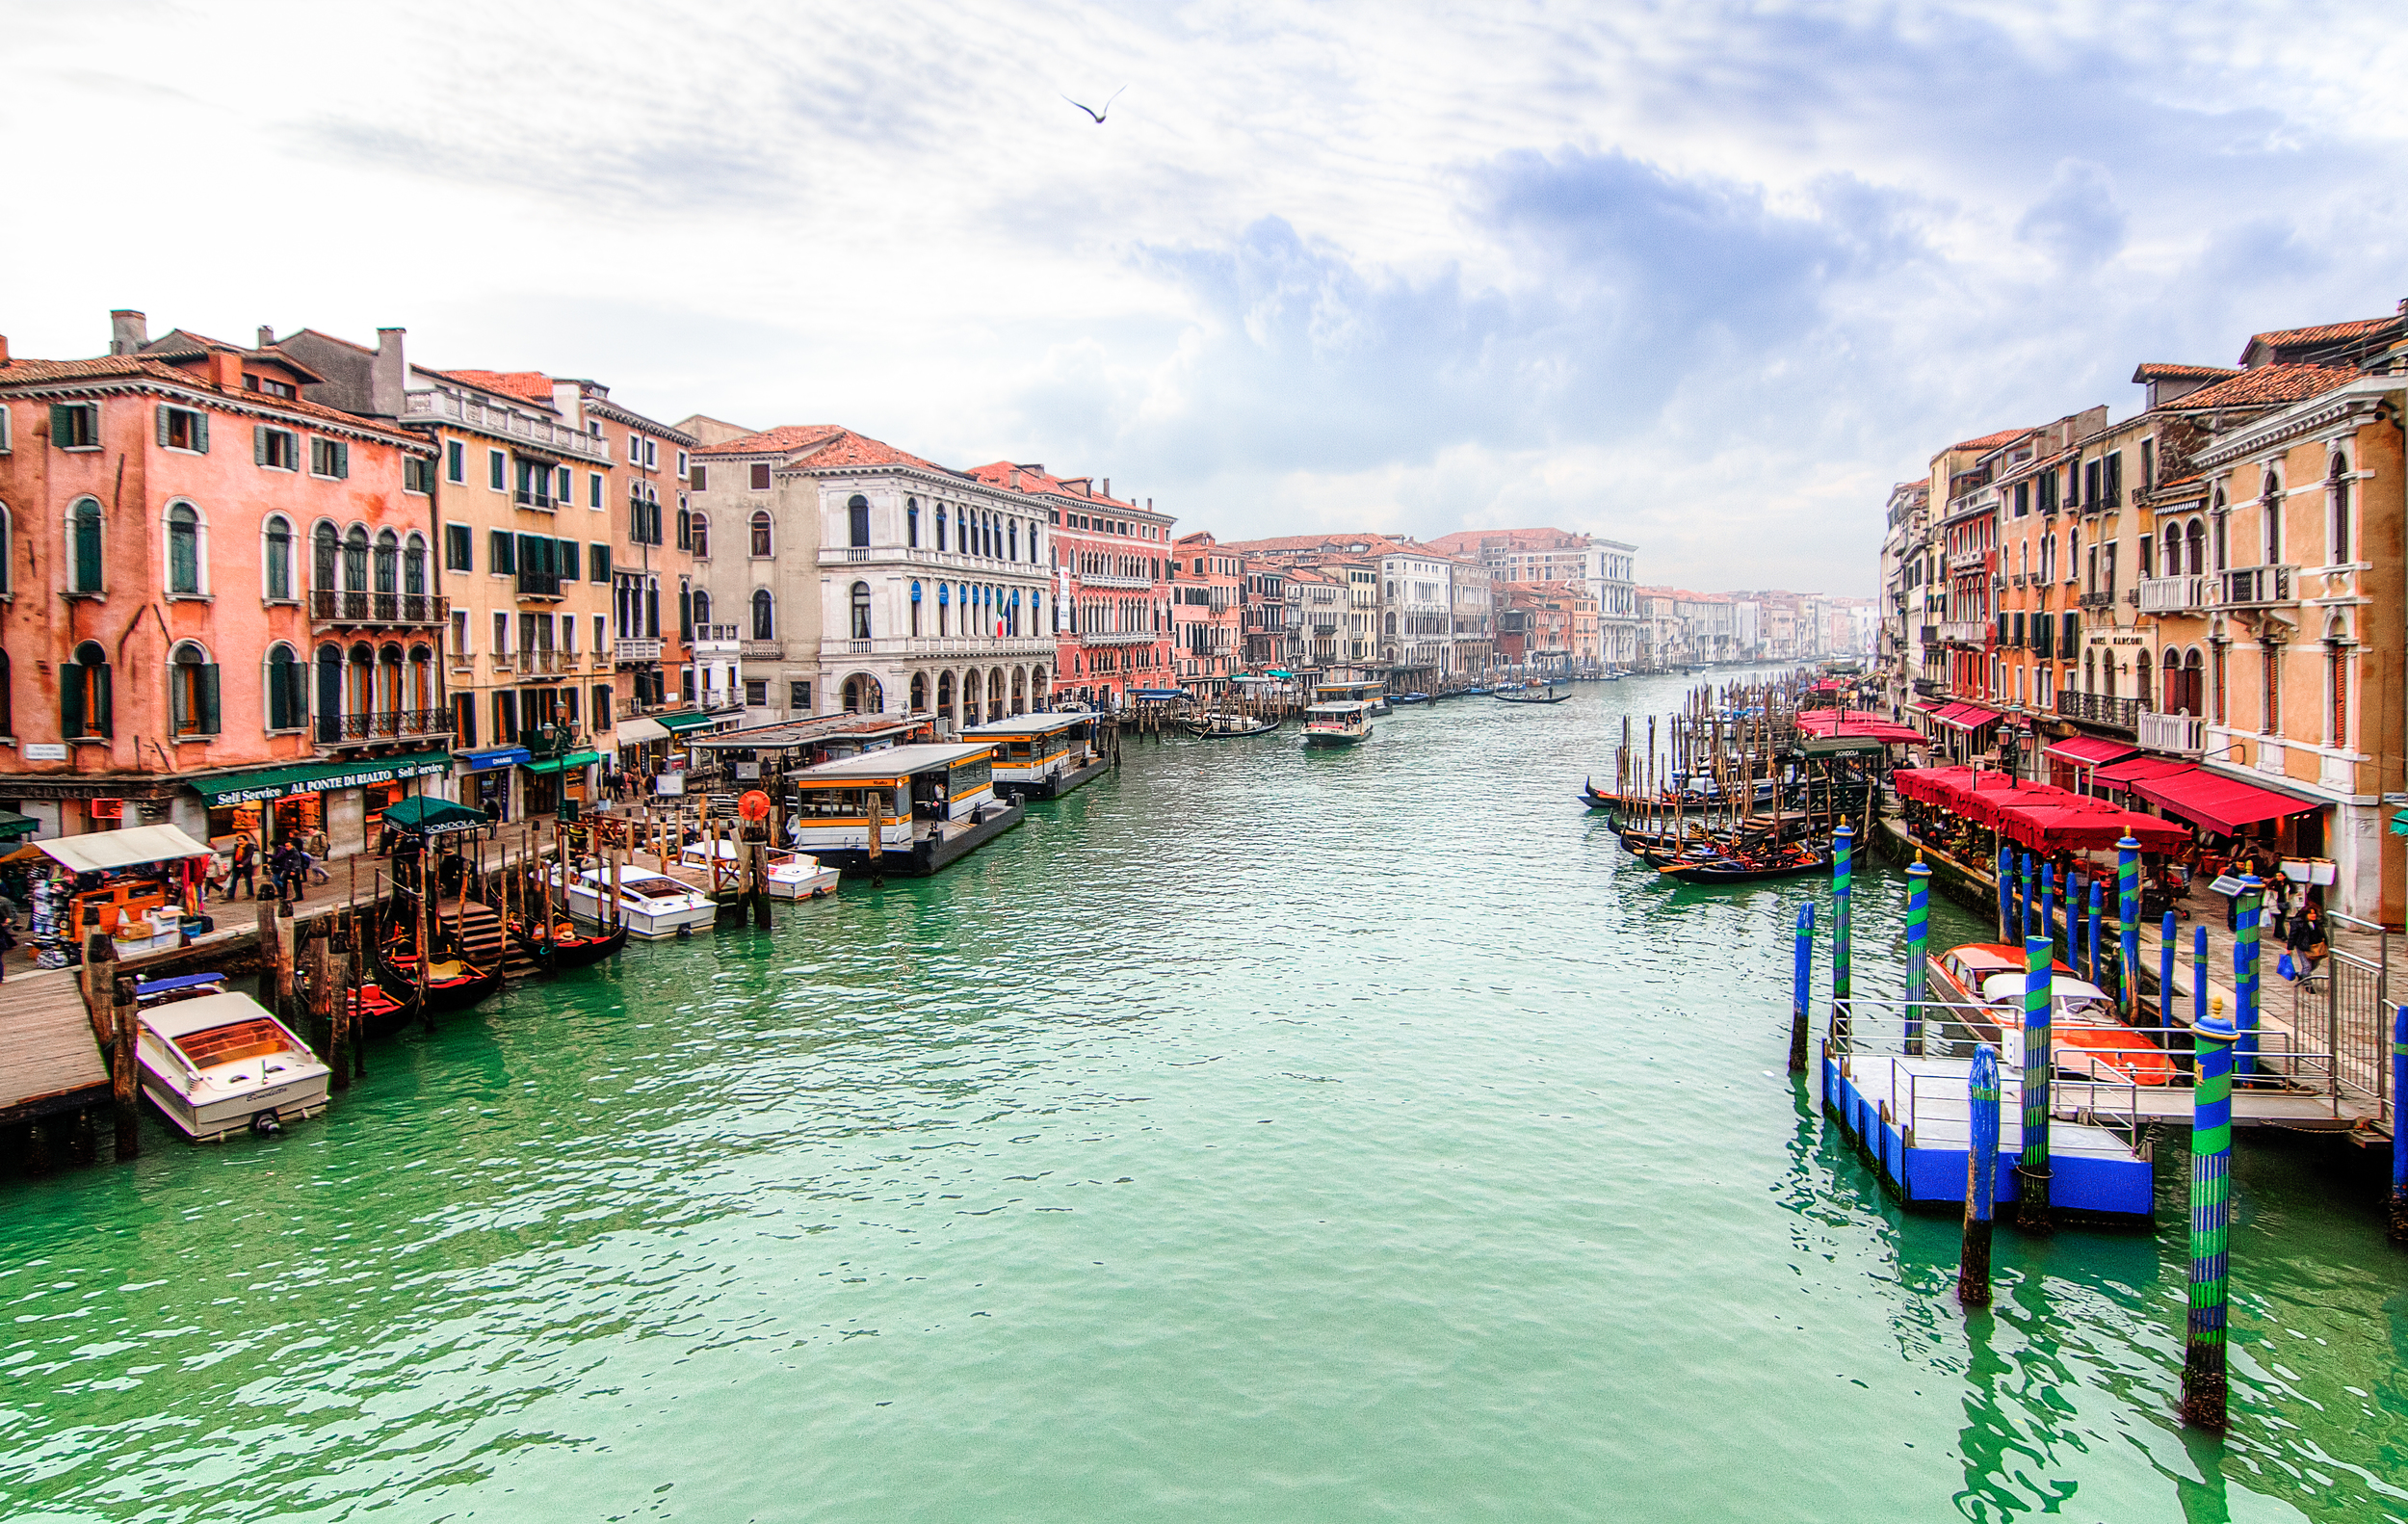  Grand Canal from the Rialto Bridge, Venice 